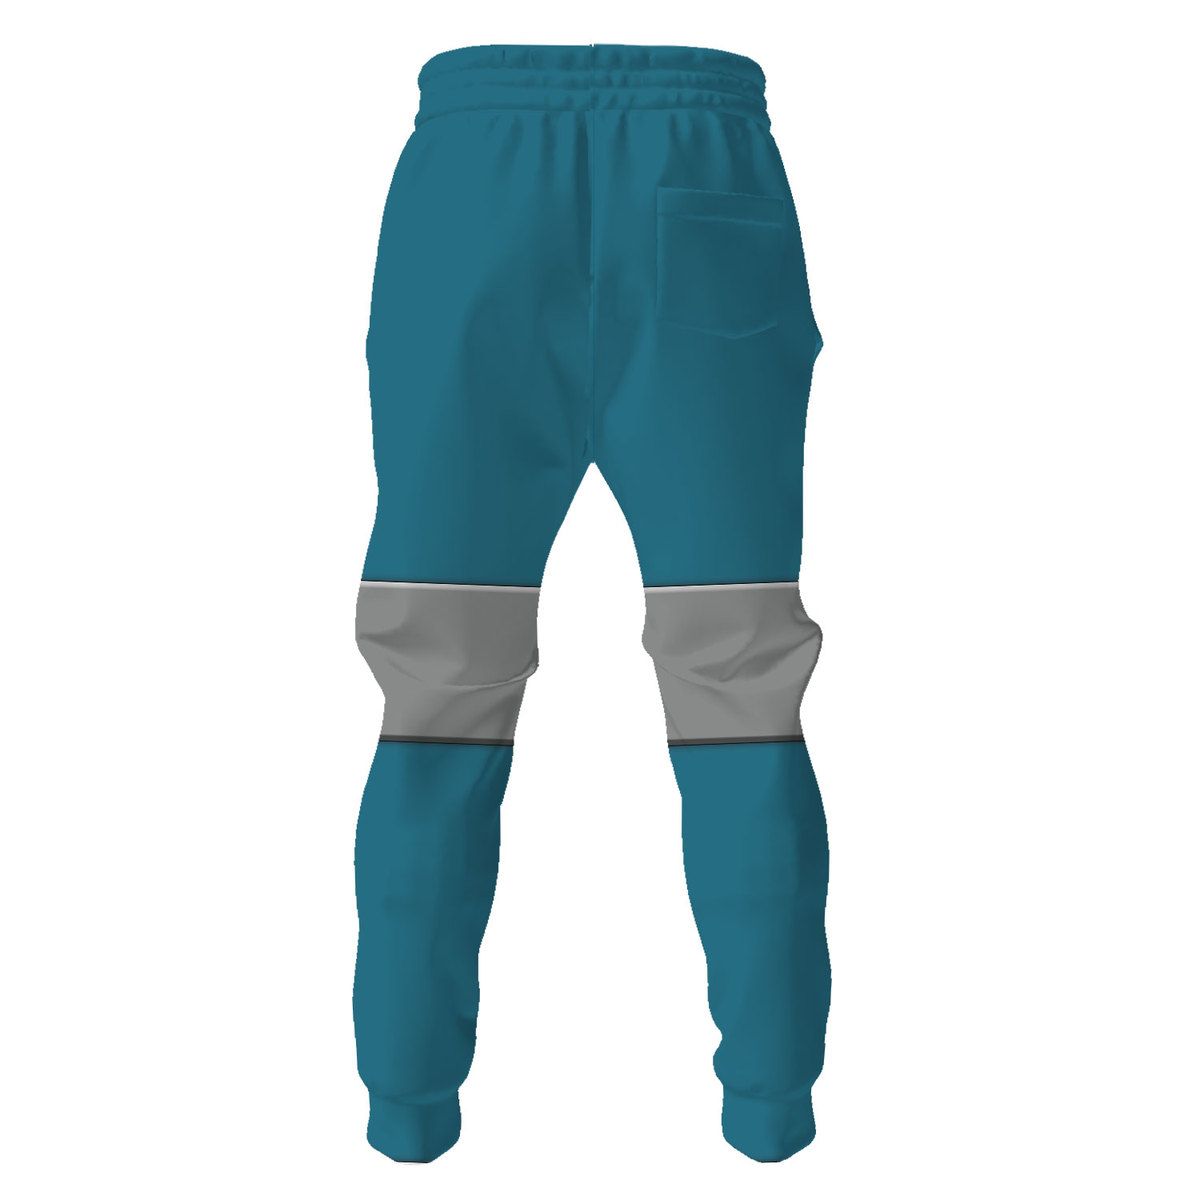 Engineer Blue Team TF2 Pants